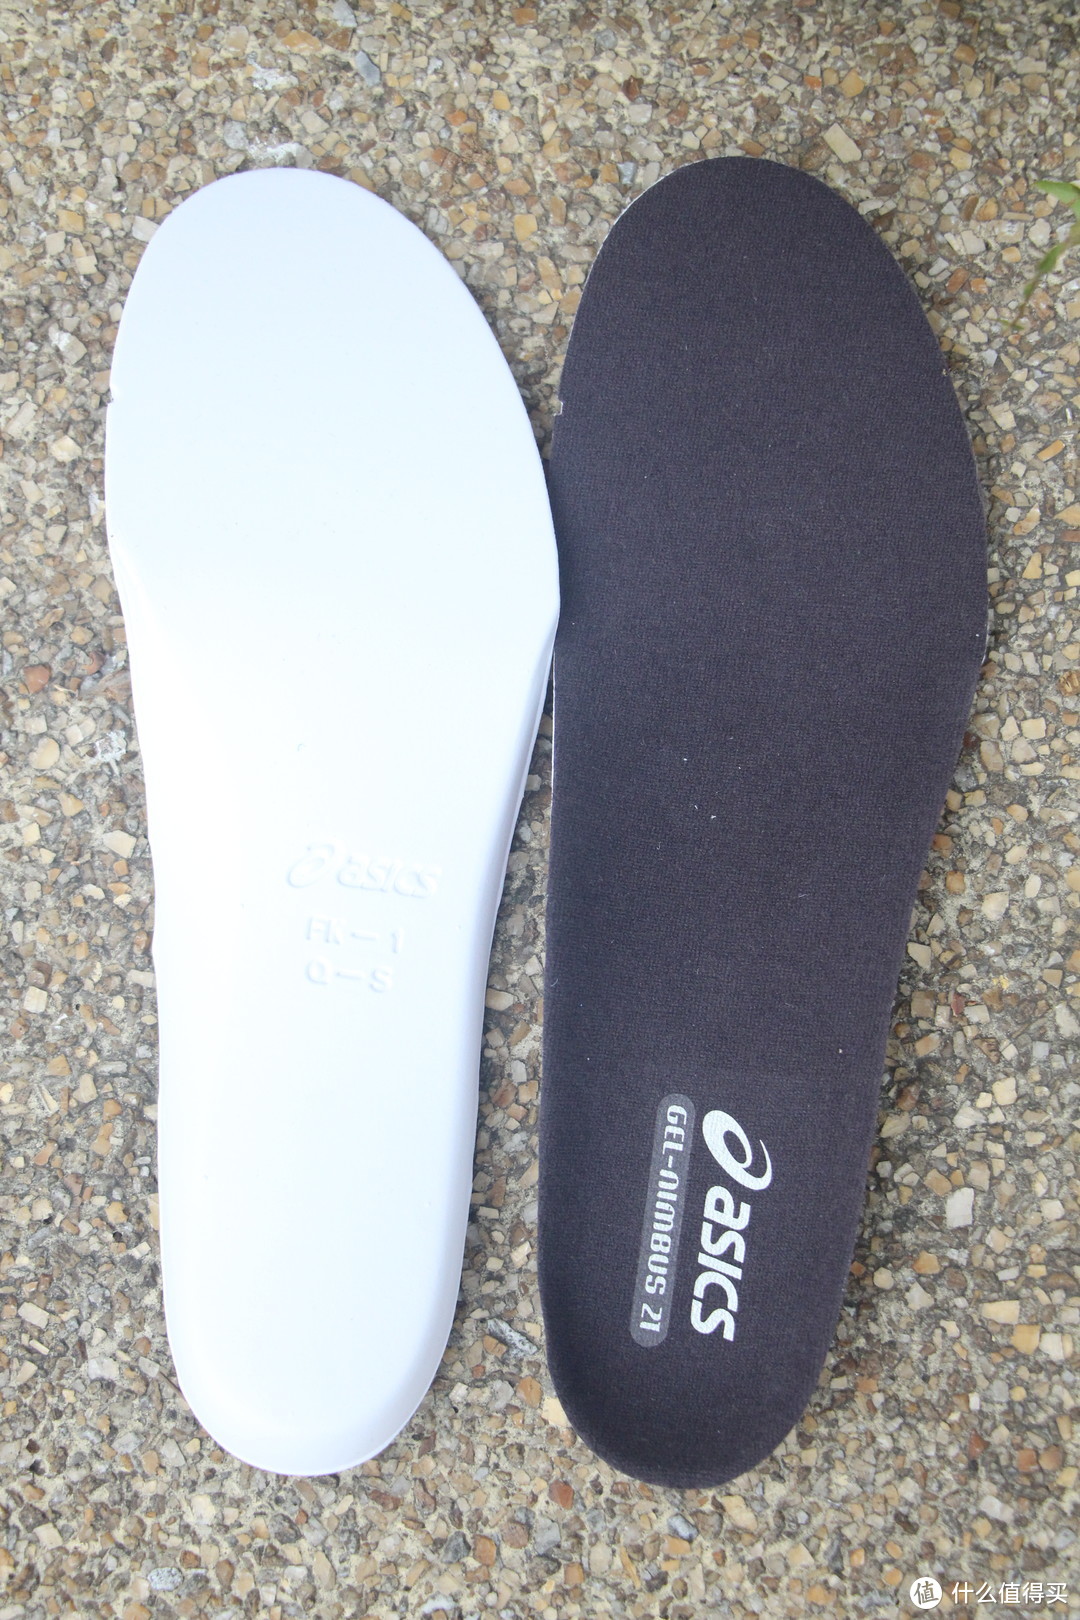 鞋垫依旧是可拆卸鞋垫，双层设计，防滑和缓震作用兼顾。